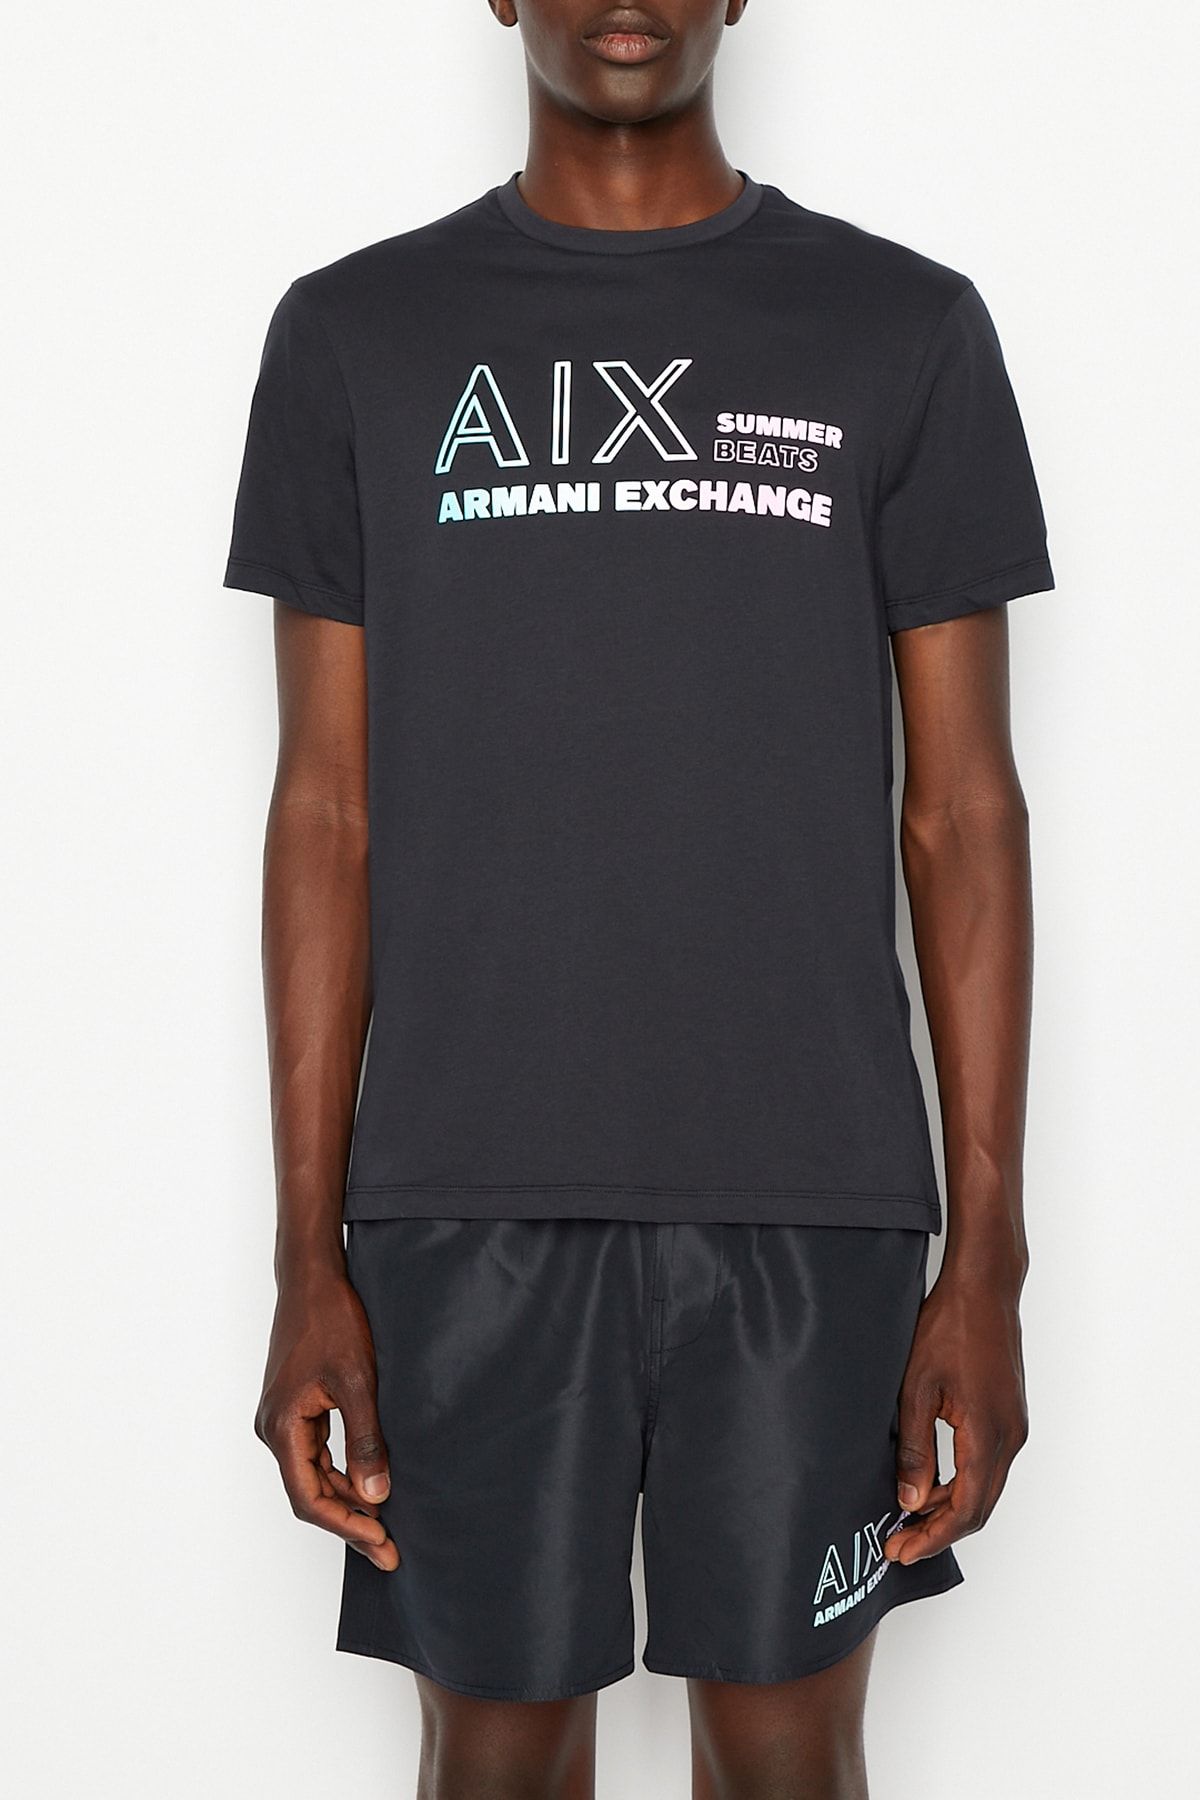 Armani Exchange Erkek Bisiklet Yaka T-shirt3rztjazj8ez